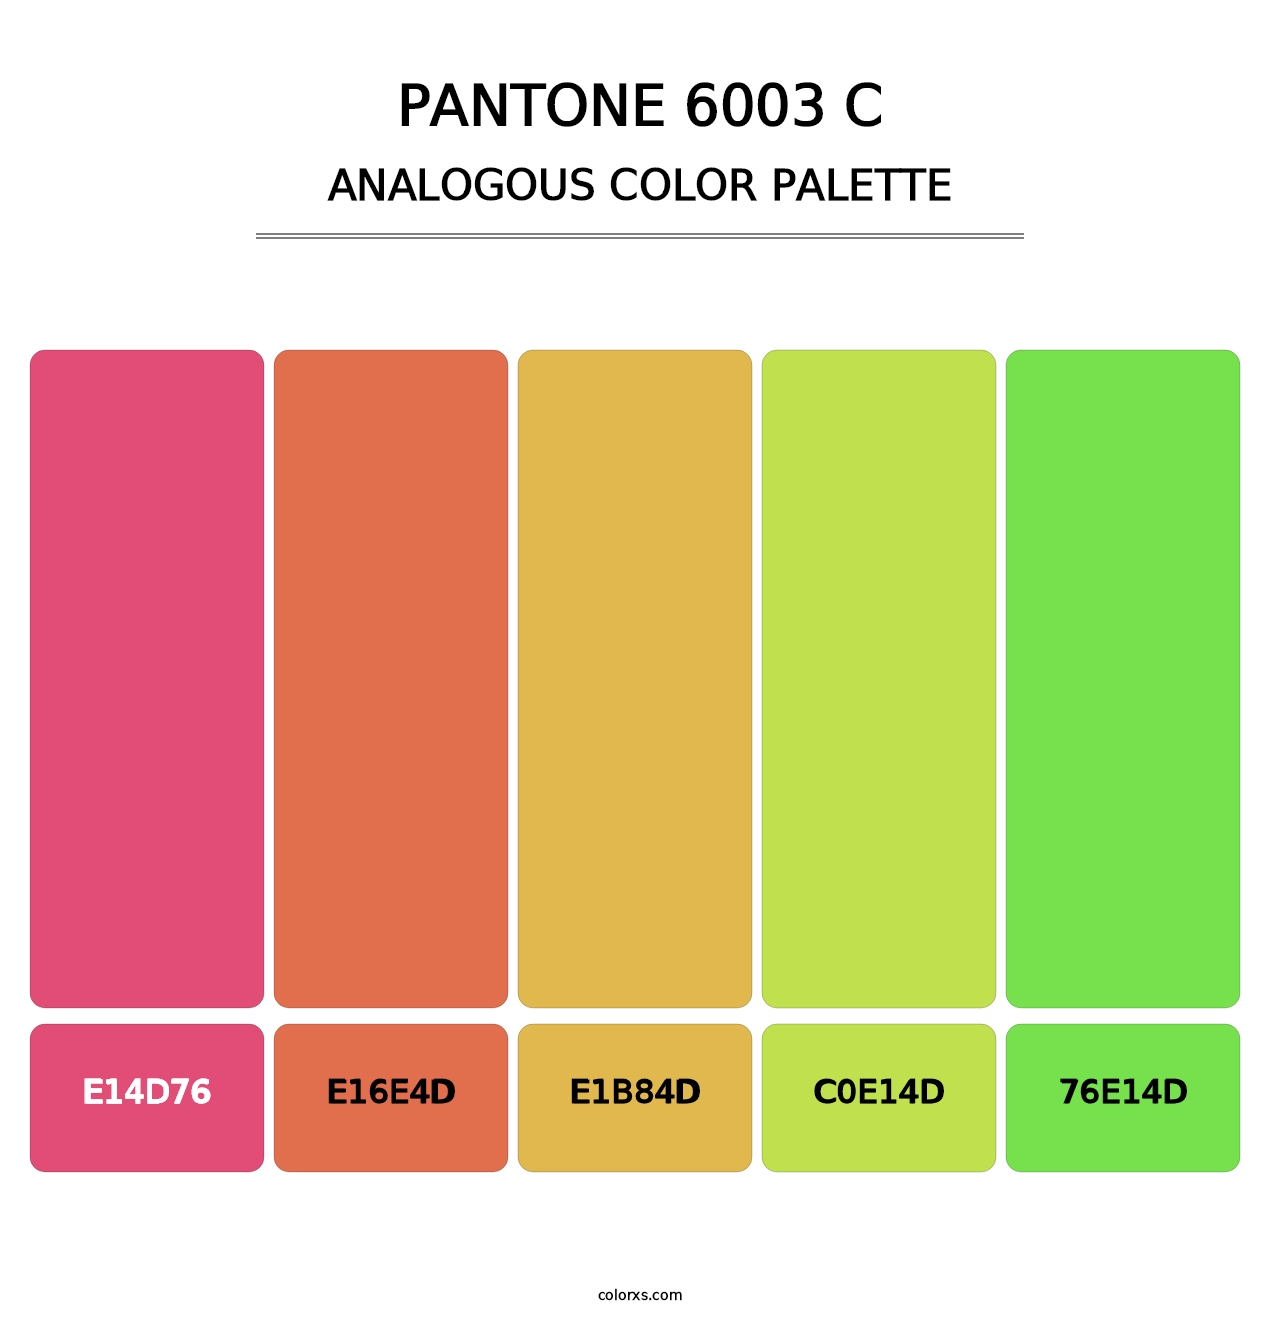 PANTONE 6003 C - Analogous Color Palette